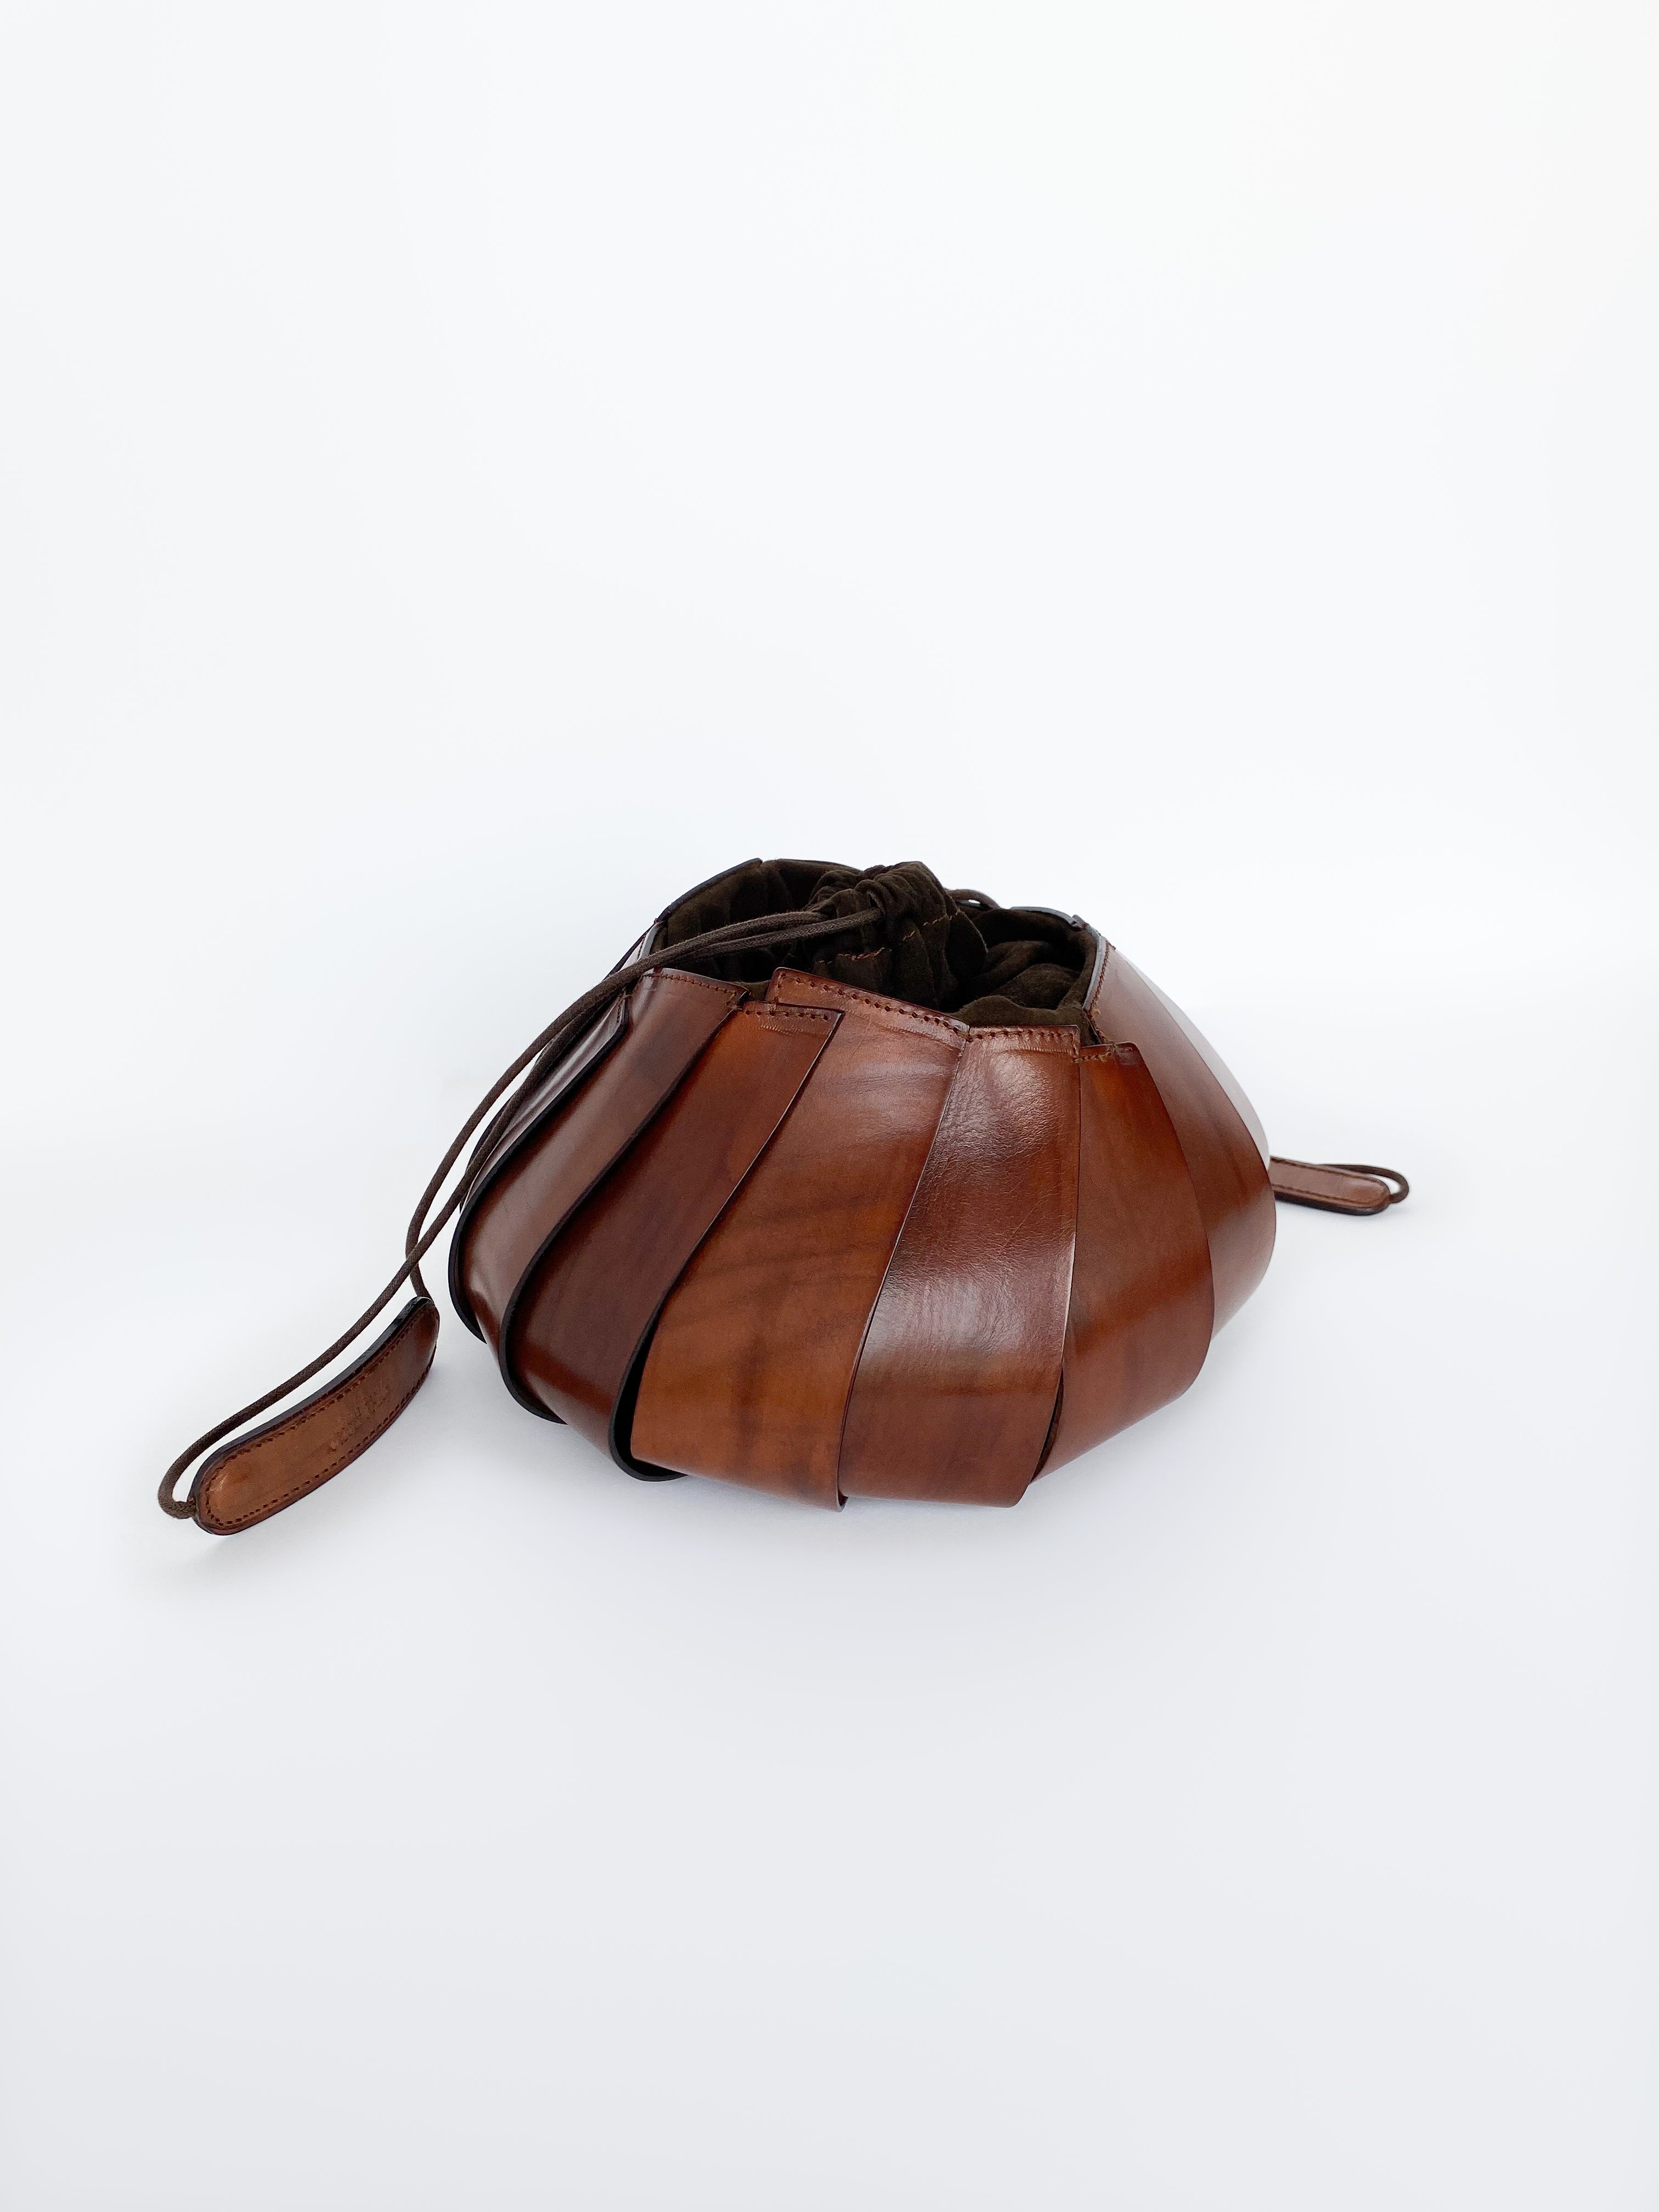 Jean Paul Gaultier leather bag